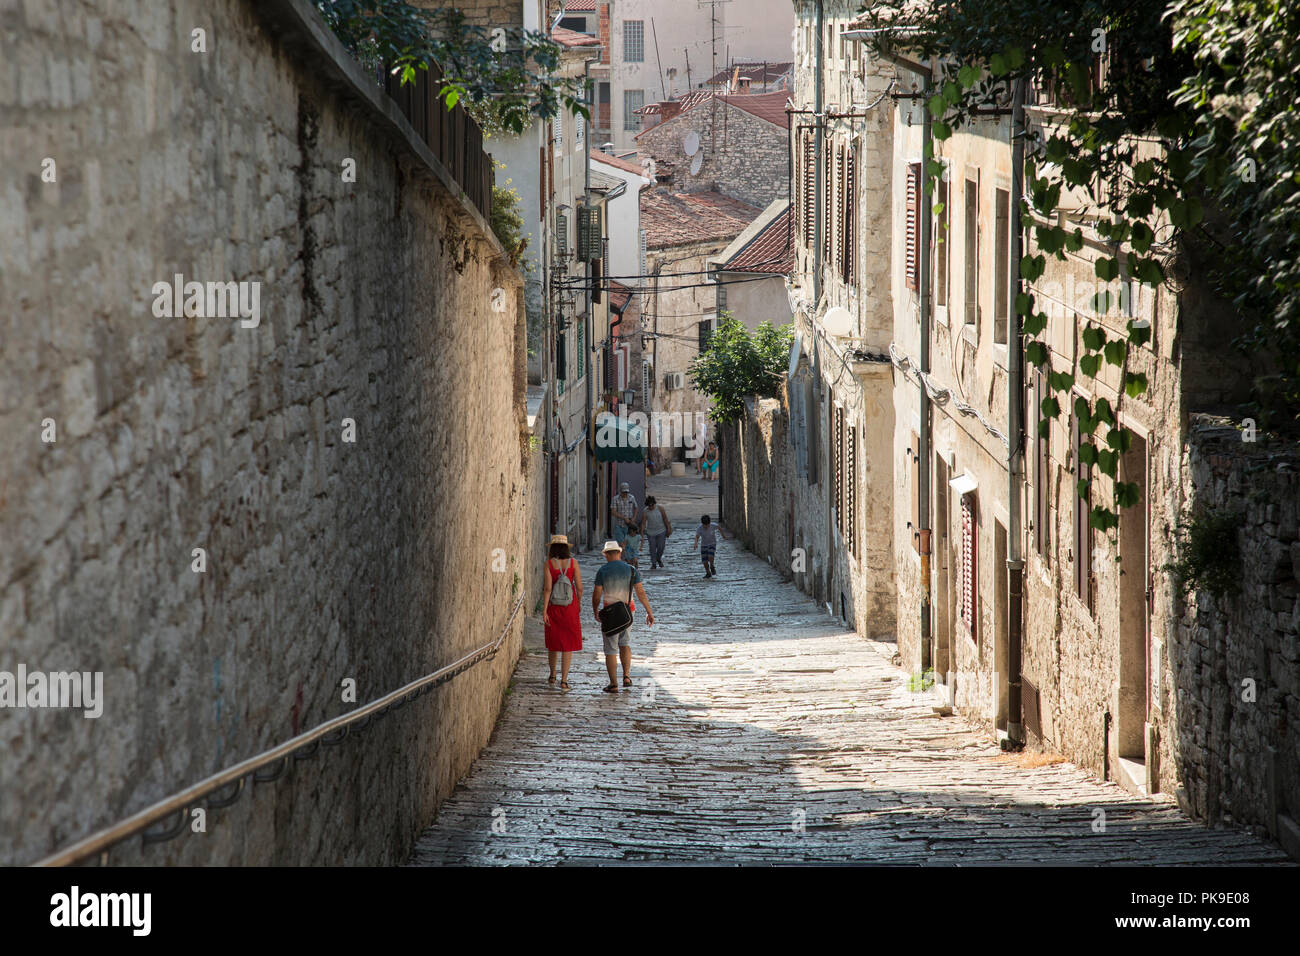 Pula, ville côtière dans la région de Croatie situé sur la péninsule d'Istrie, au nord de la côte Adriatique Croate, de l'Europe Banque D'Images